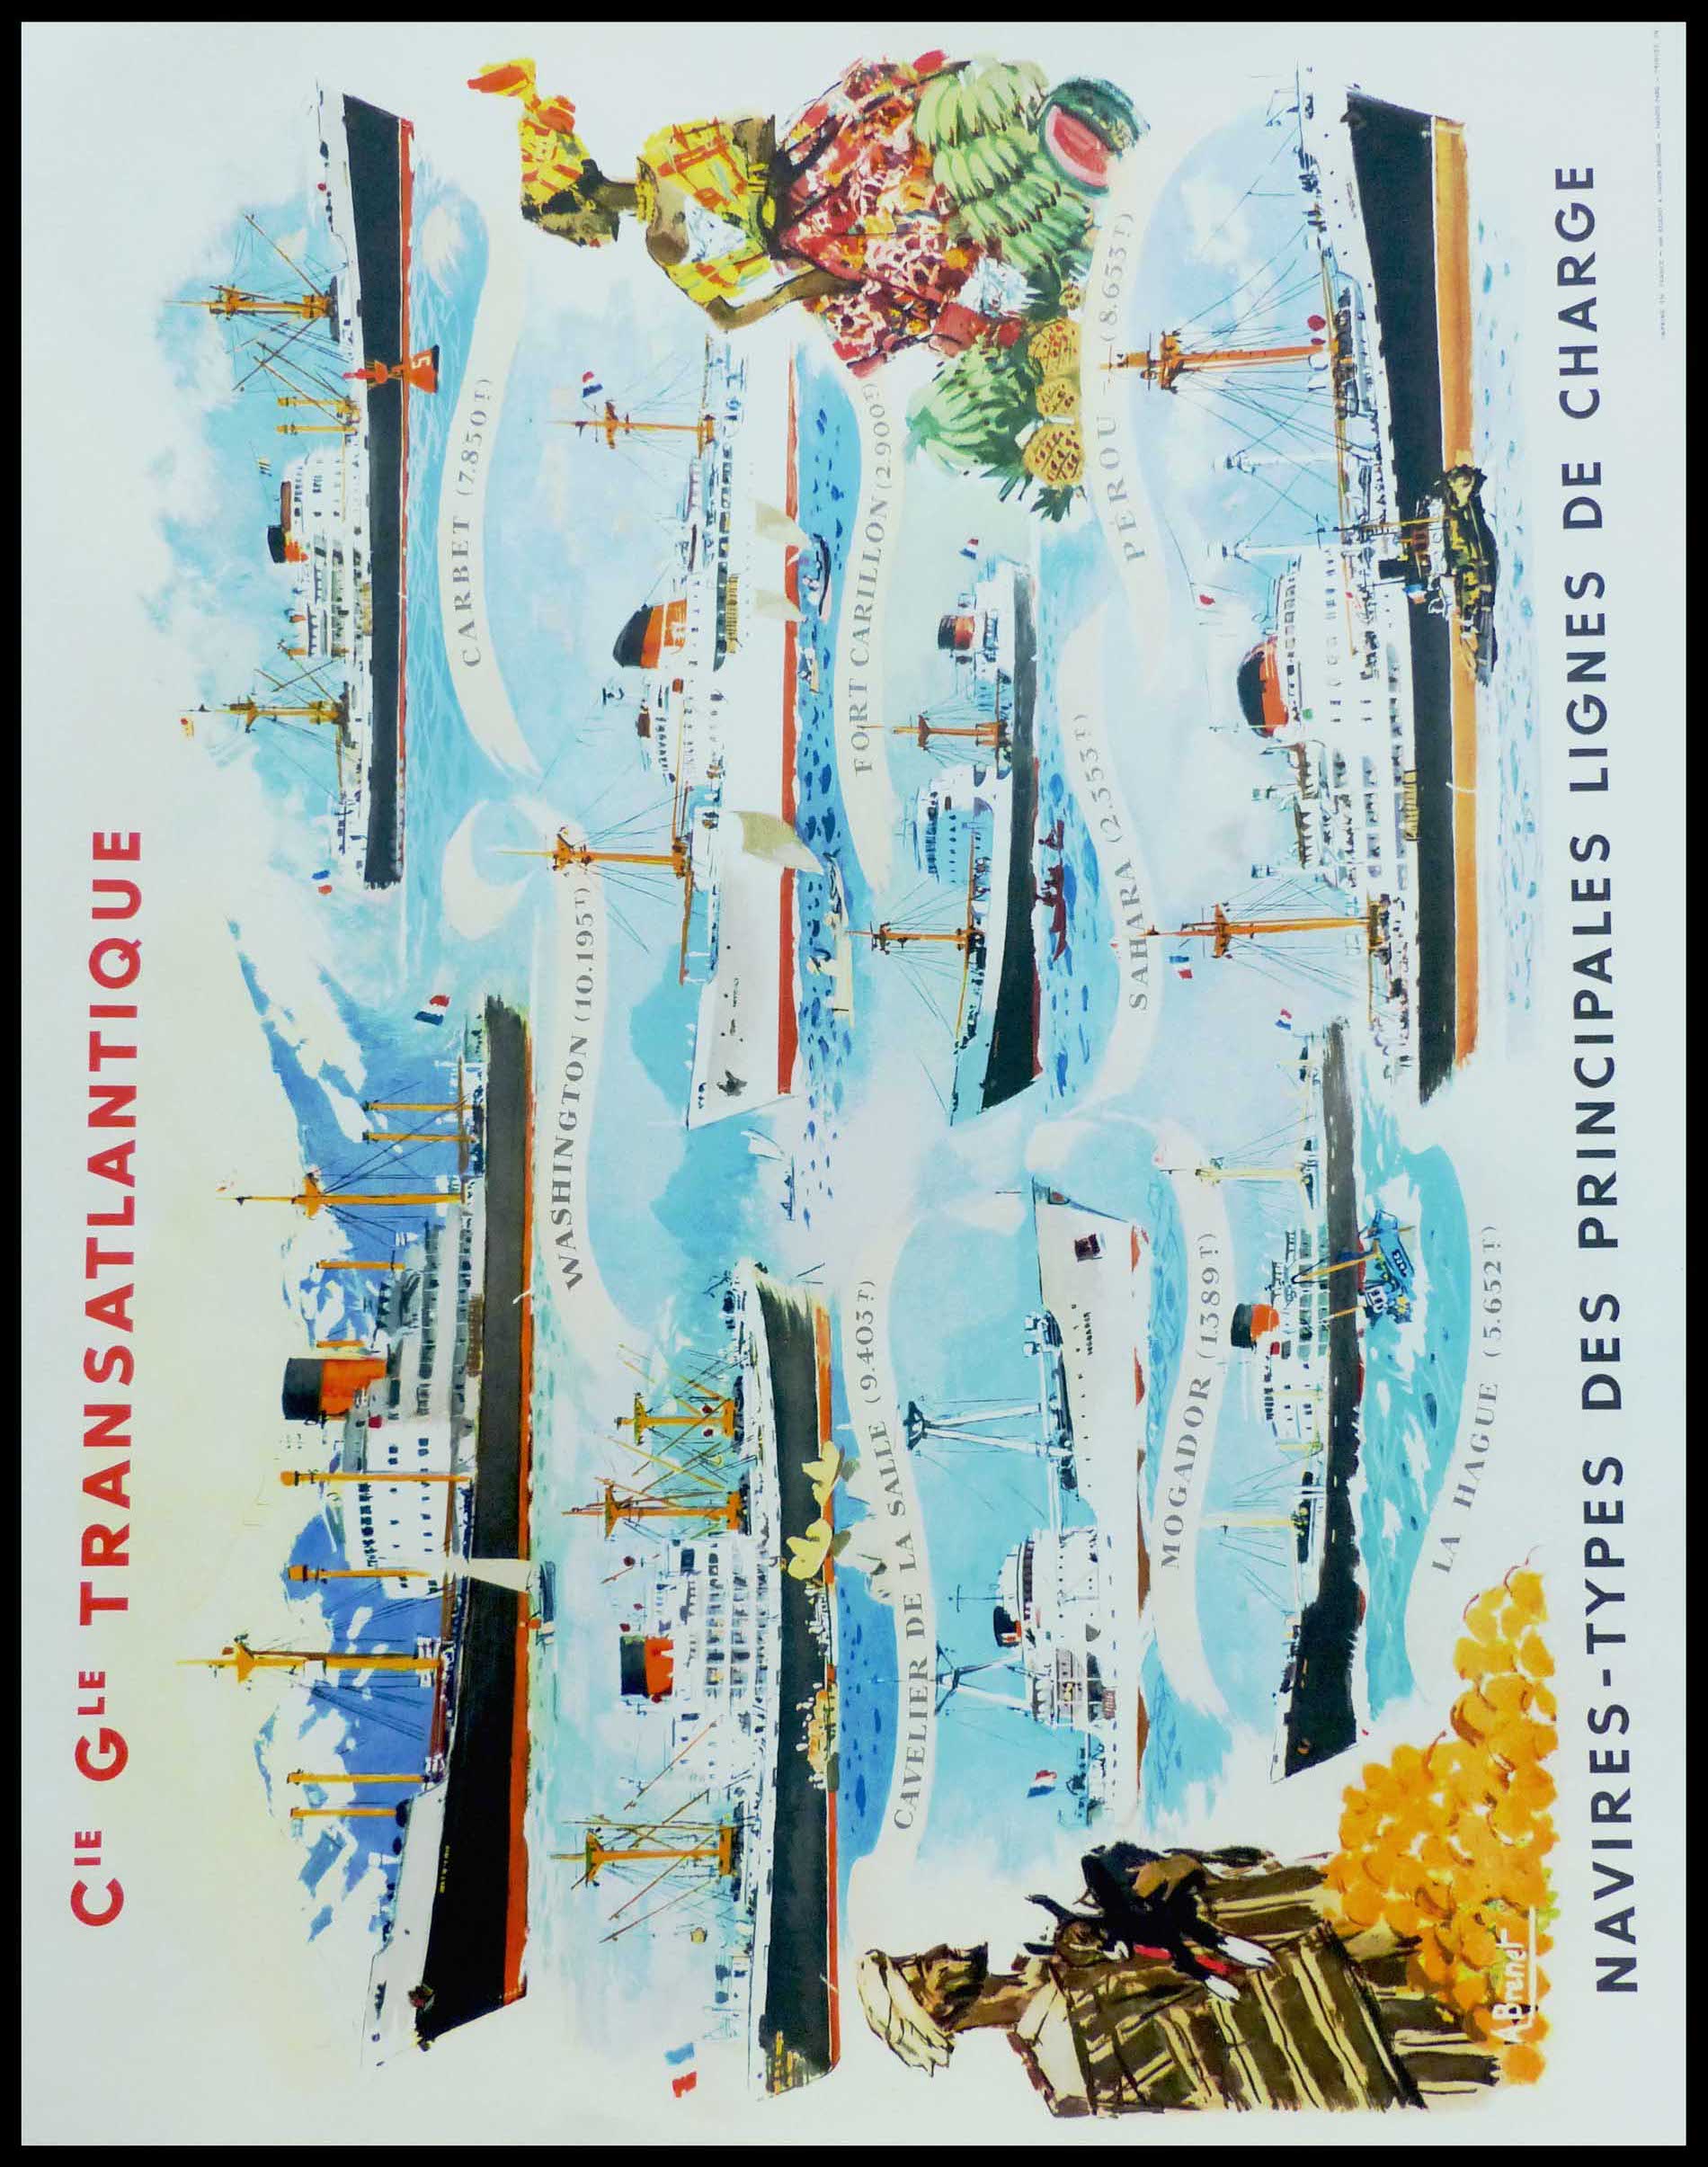 (alt=Affiche ancienne de voyage, Cie Gle Transatlantique, 1950. Réalisée par A.Brenet et imprimée par Beuchet & Vanden Brugge")